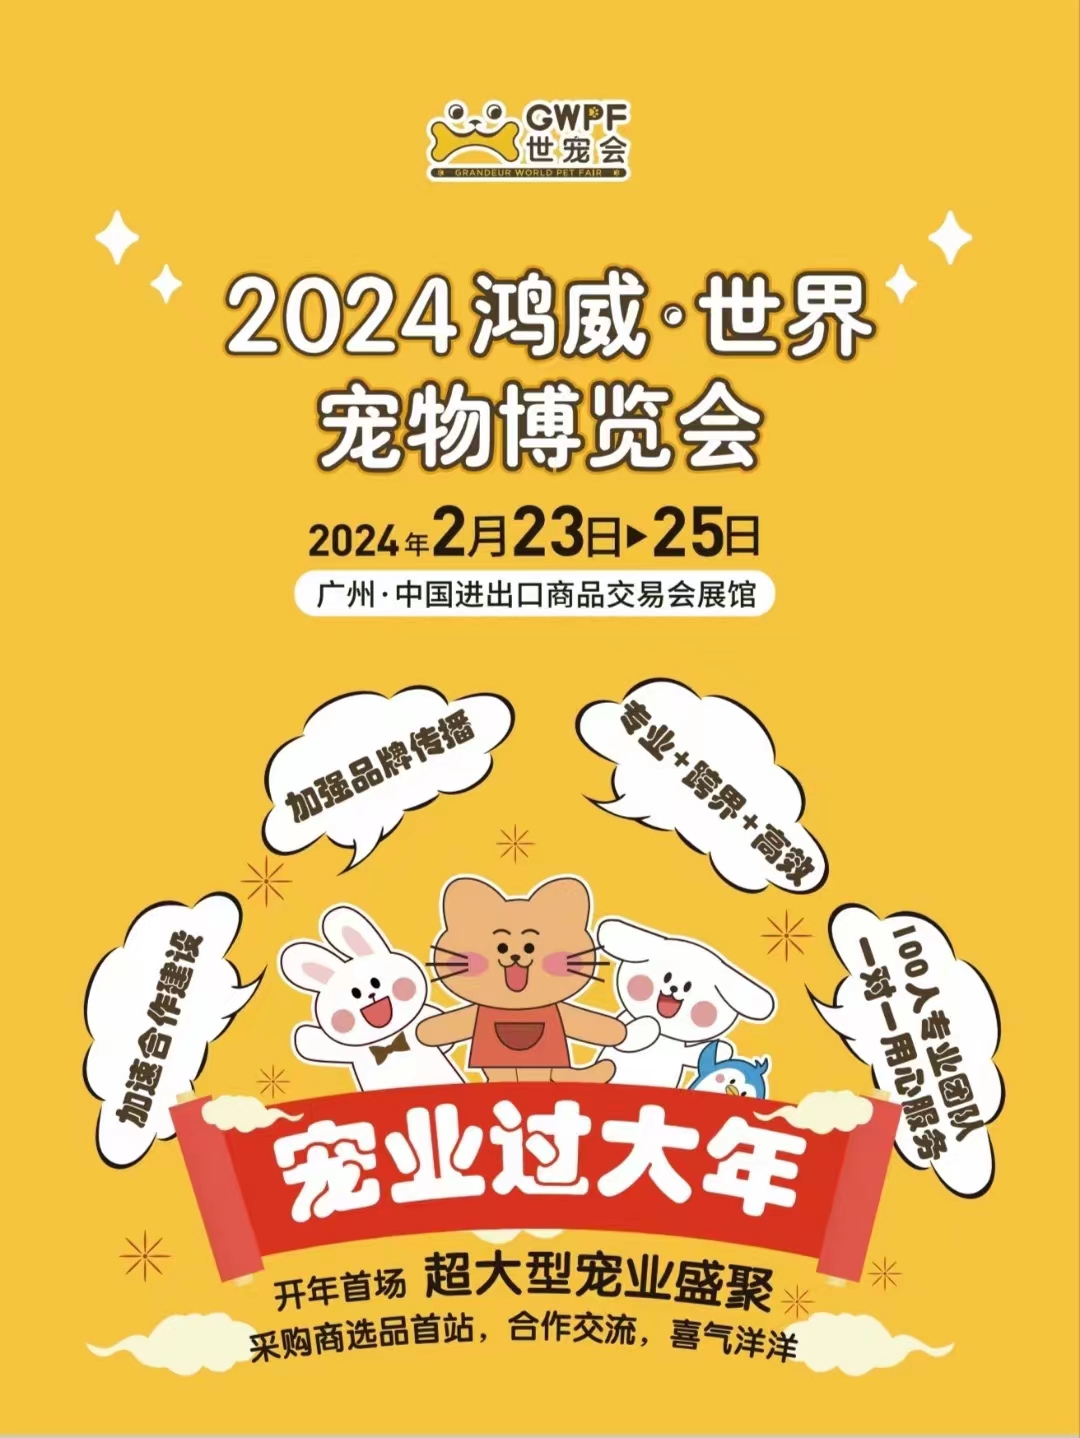 2024开年第一场超大型宠业盛聚！鸿威·世界宠物博览会（GWPF世宠会）重磅升级！